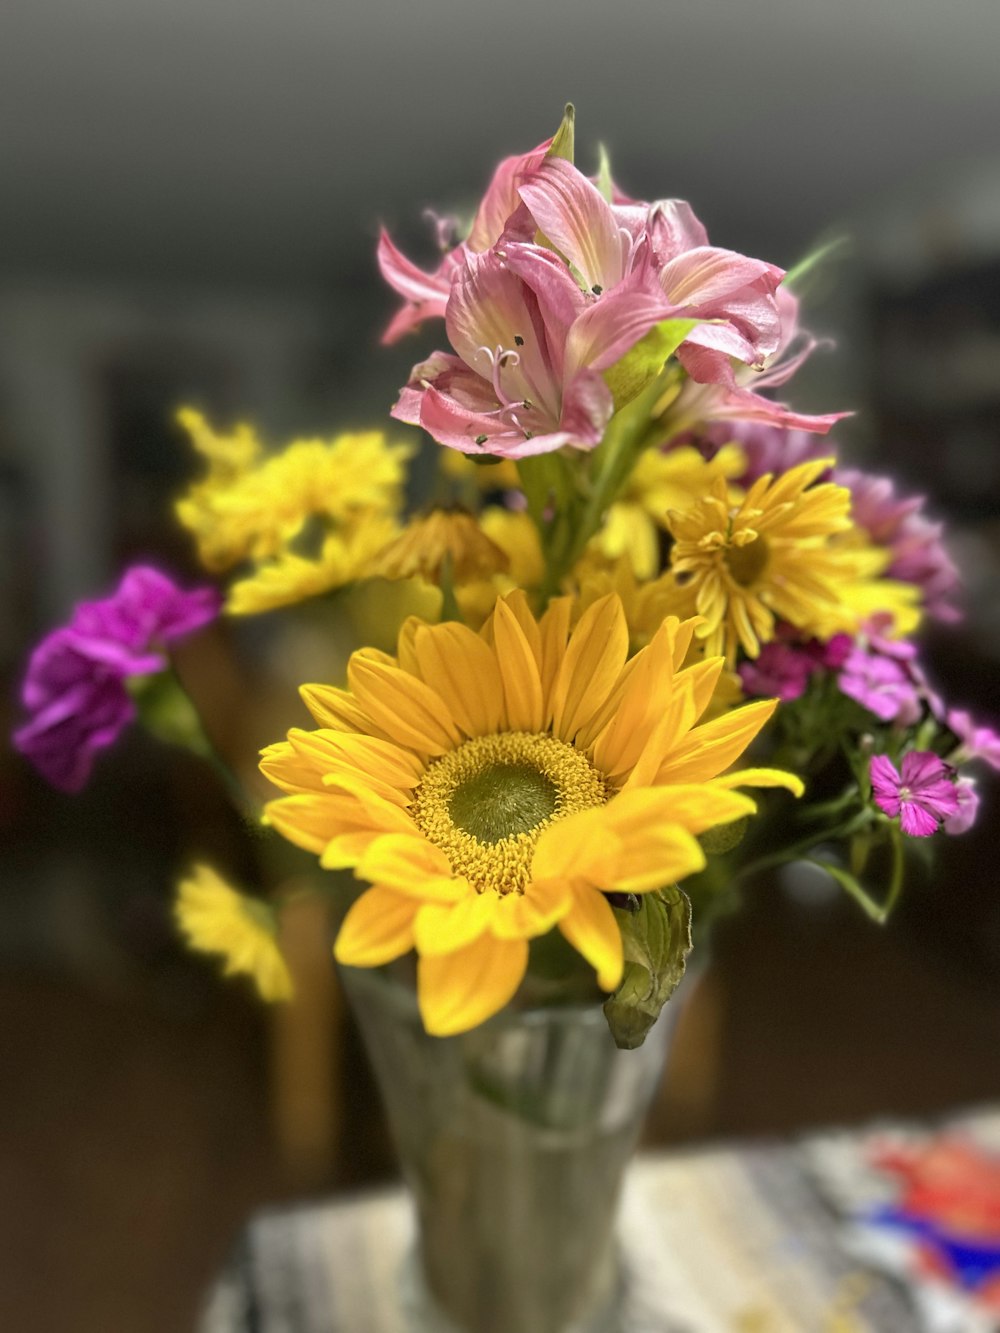 色とりどりの花がたくさん咲き誇る花瓶